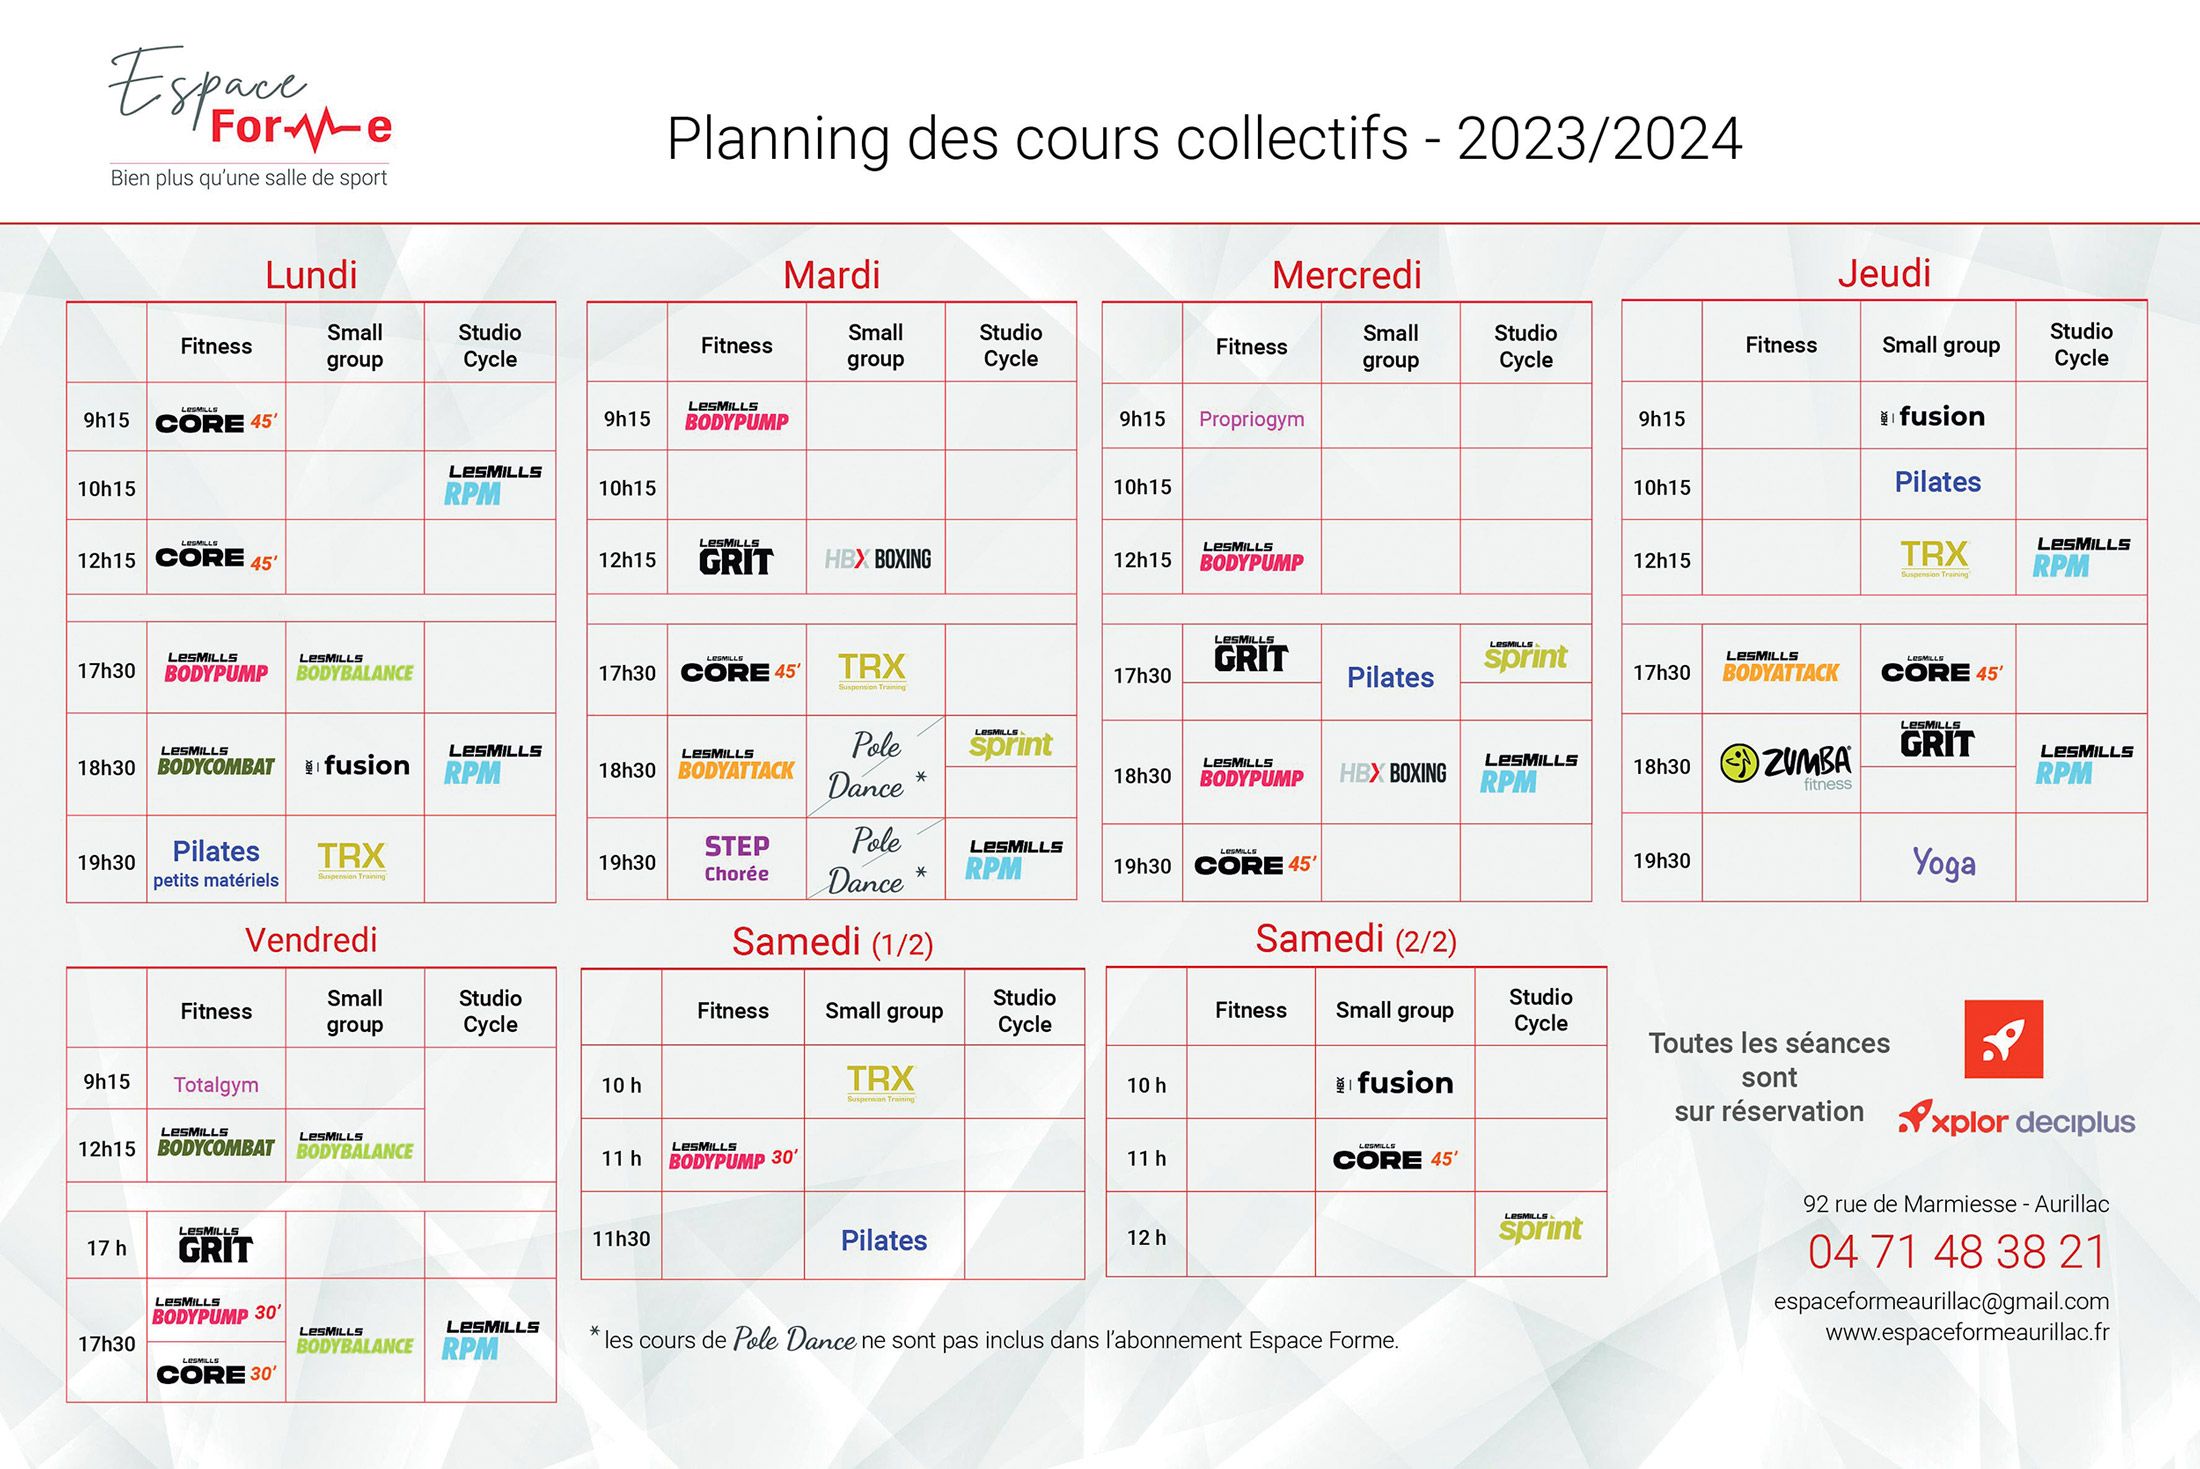 Planning des cours collectifs proposés par la salle de sport Espace Forme Aurillac dans le Cantal à partir de septembre 2023